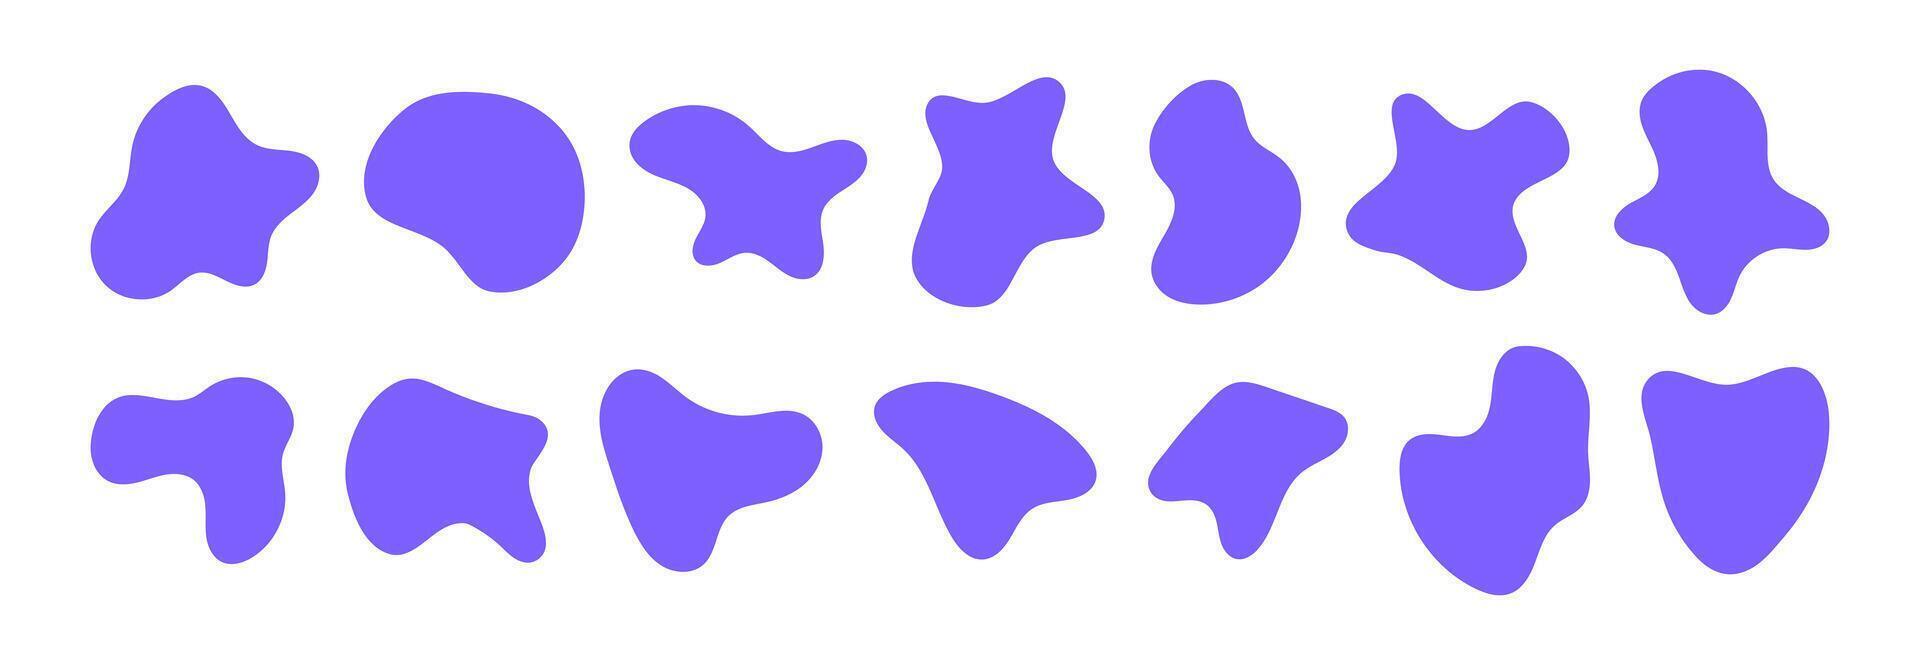 organisch Klecks Formen. irregulär Formen. asymmetrisch fließend Flüssigkeit Kreise. glatt Silhouette Steine. lila Sammlung von isoliert Vektor Elemente auf Weiß Hintergrund.